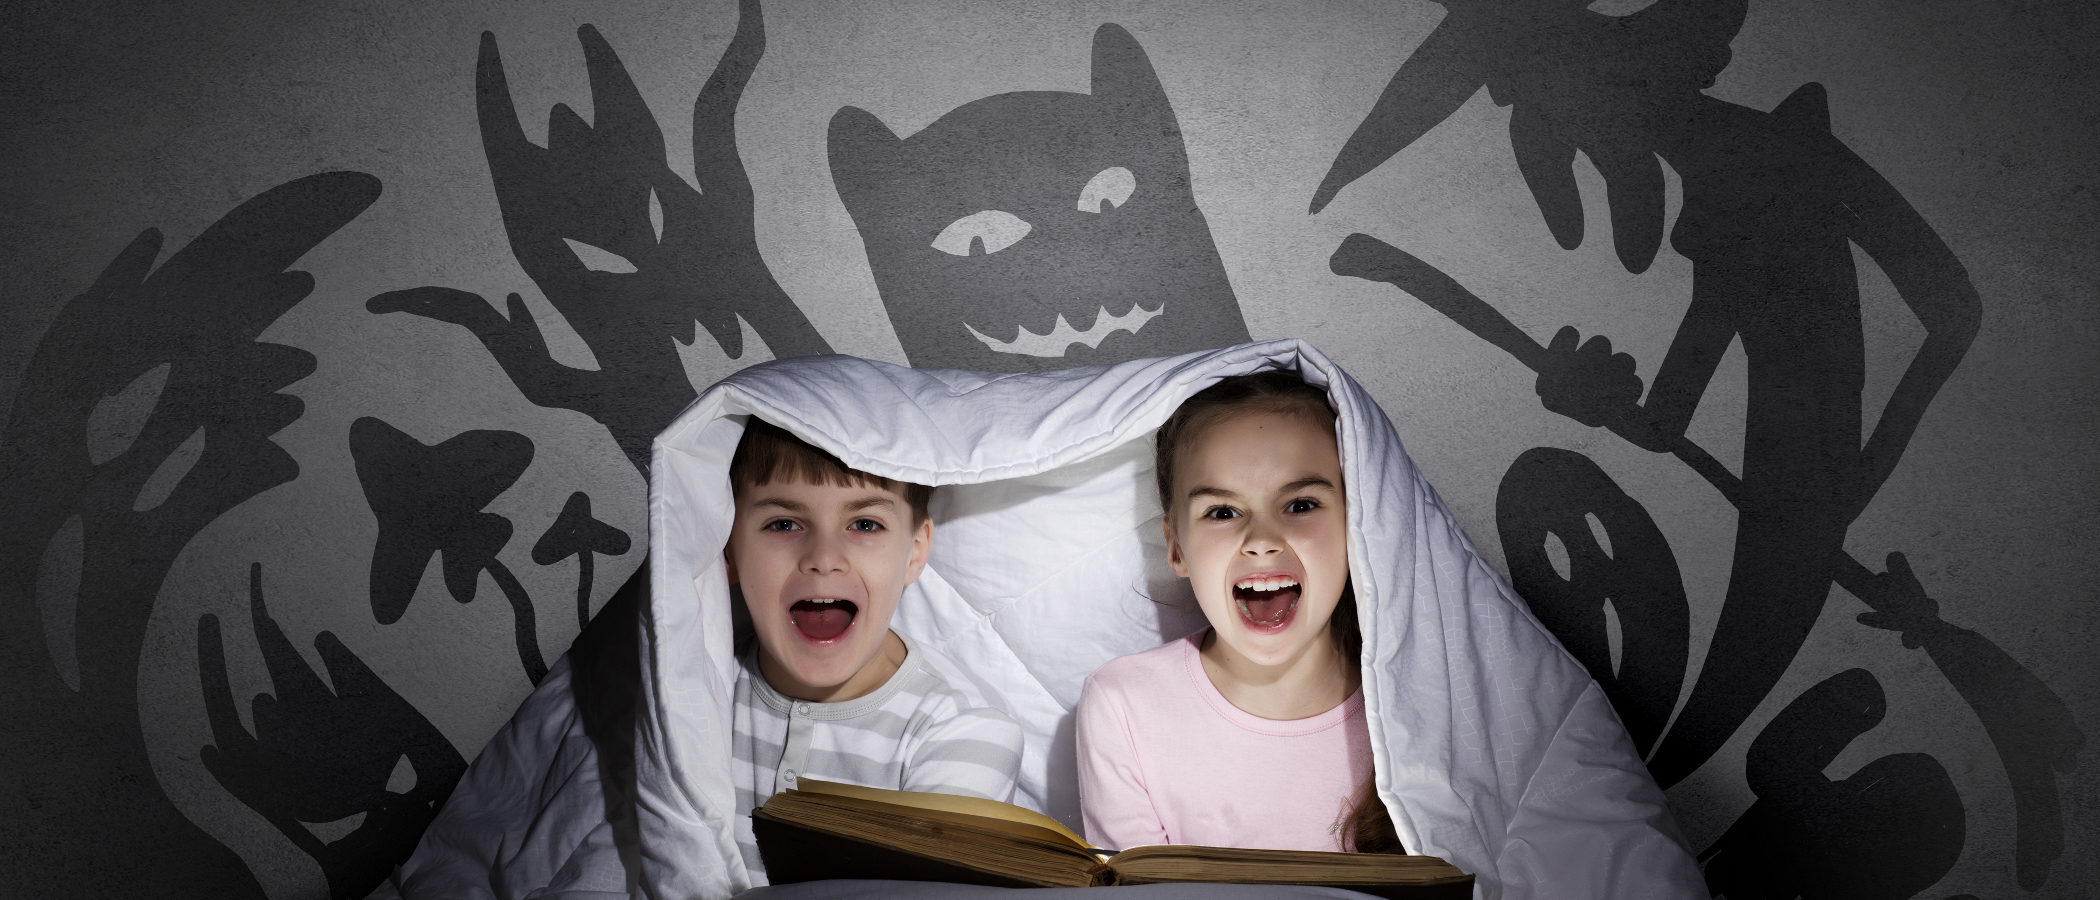 Cuentos de terror para contar a los niños en Halloween - Bekia Padres